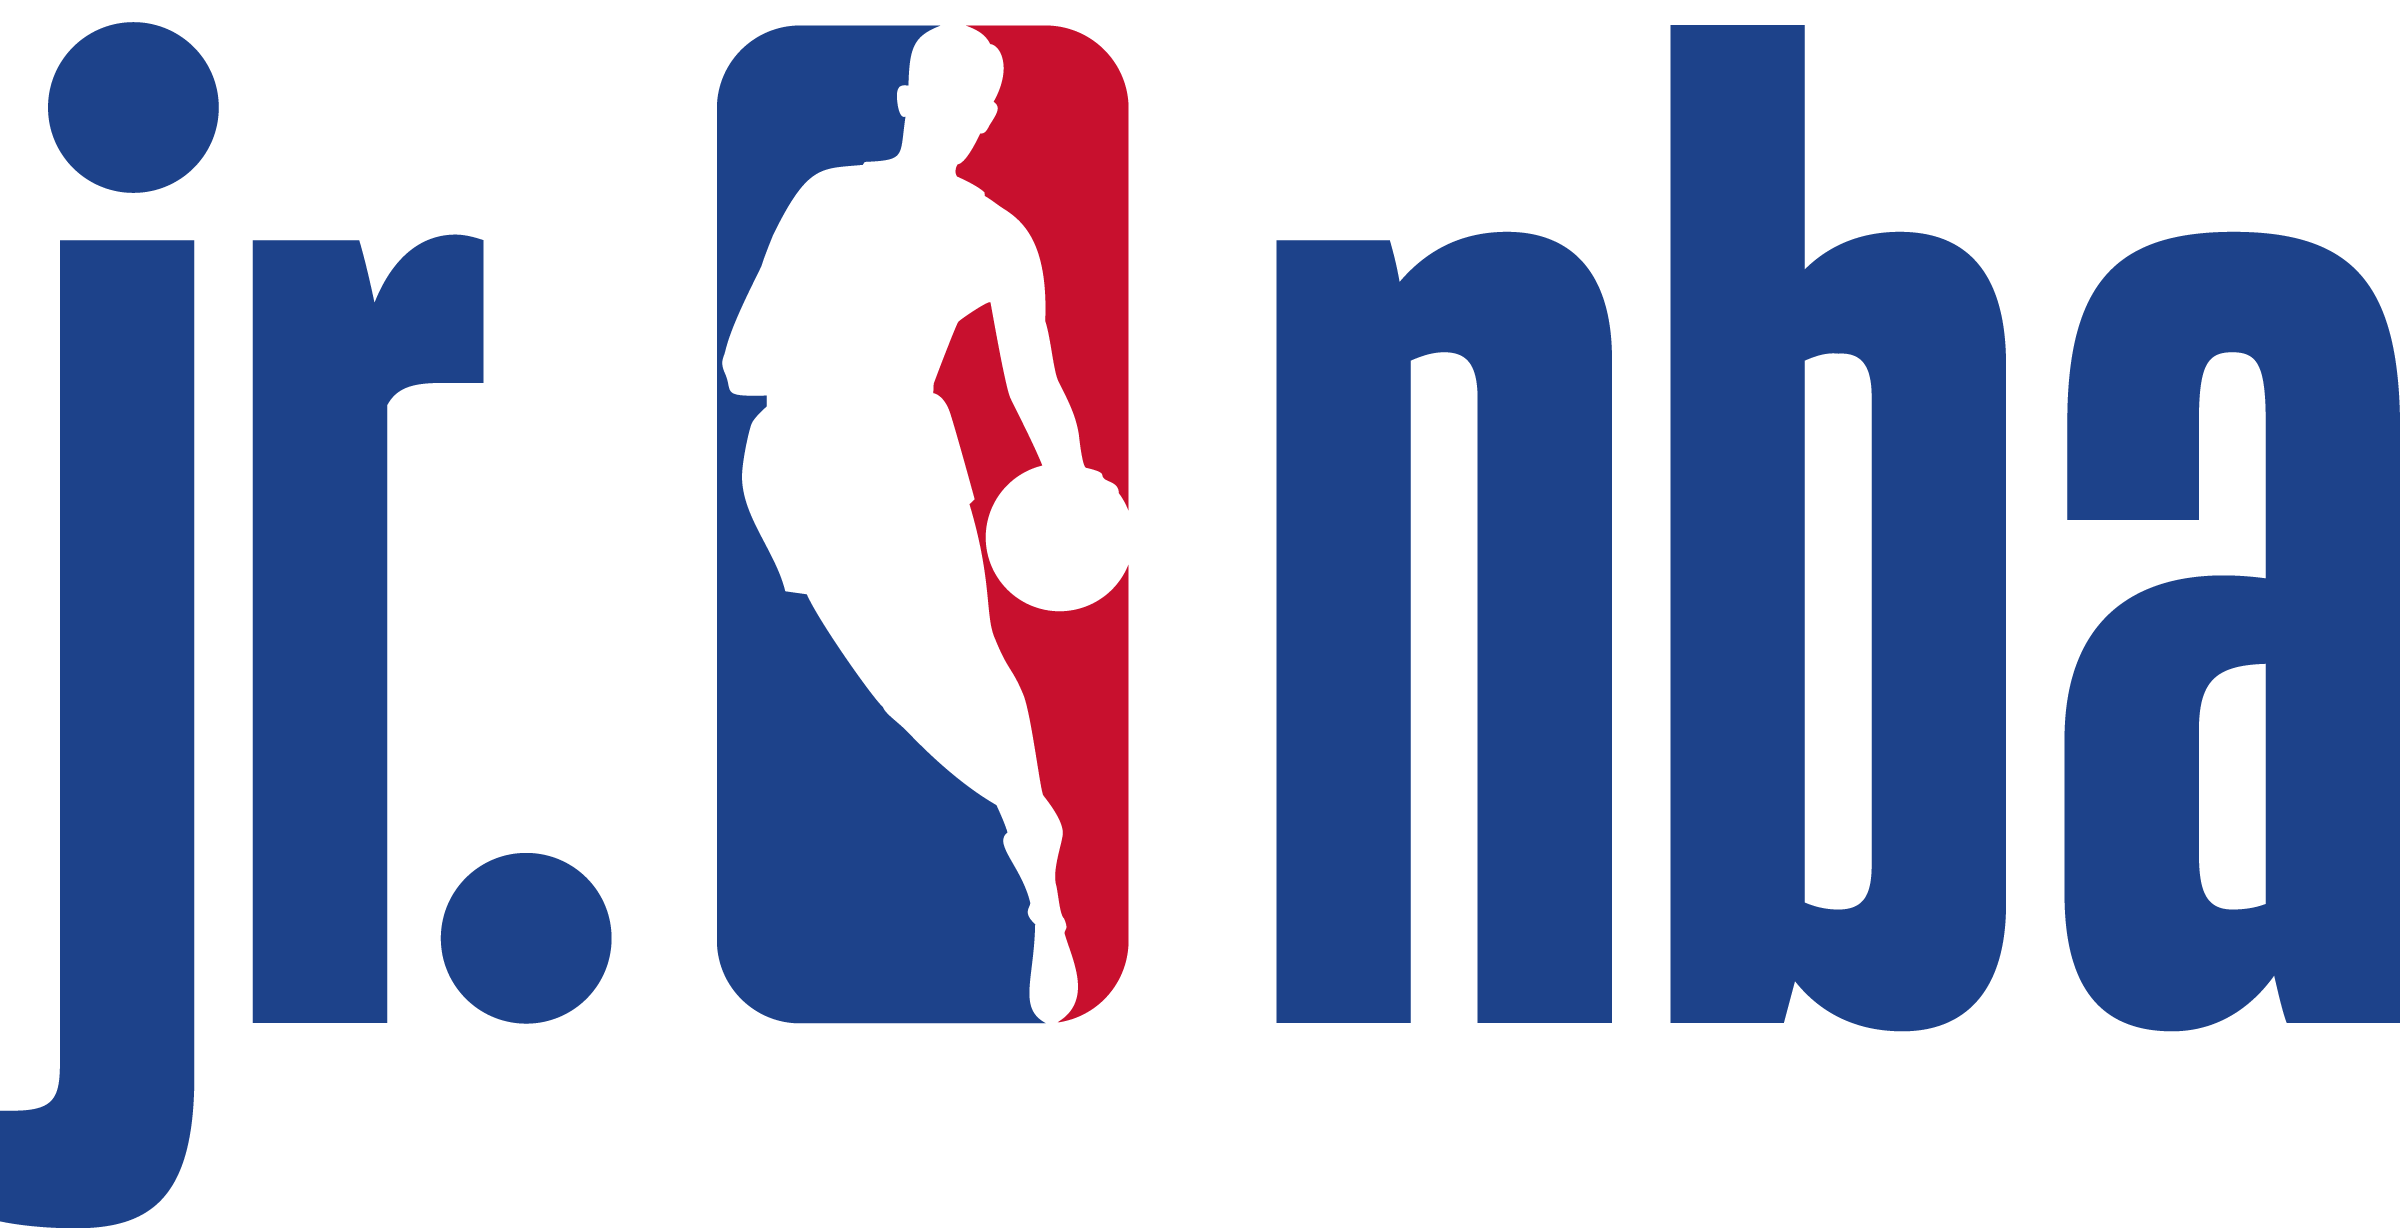 NBA Logo Transparent Image